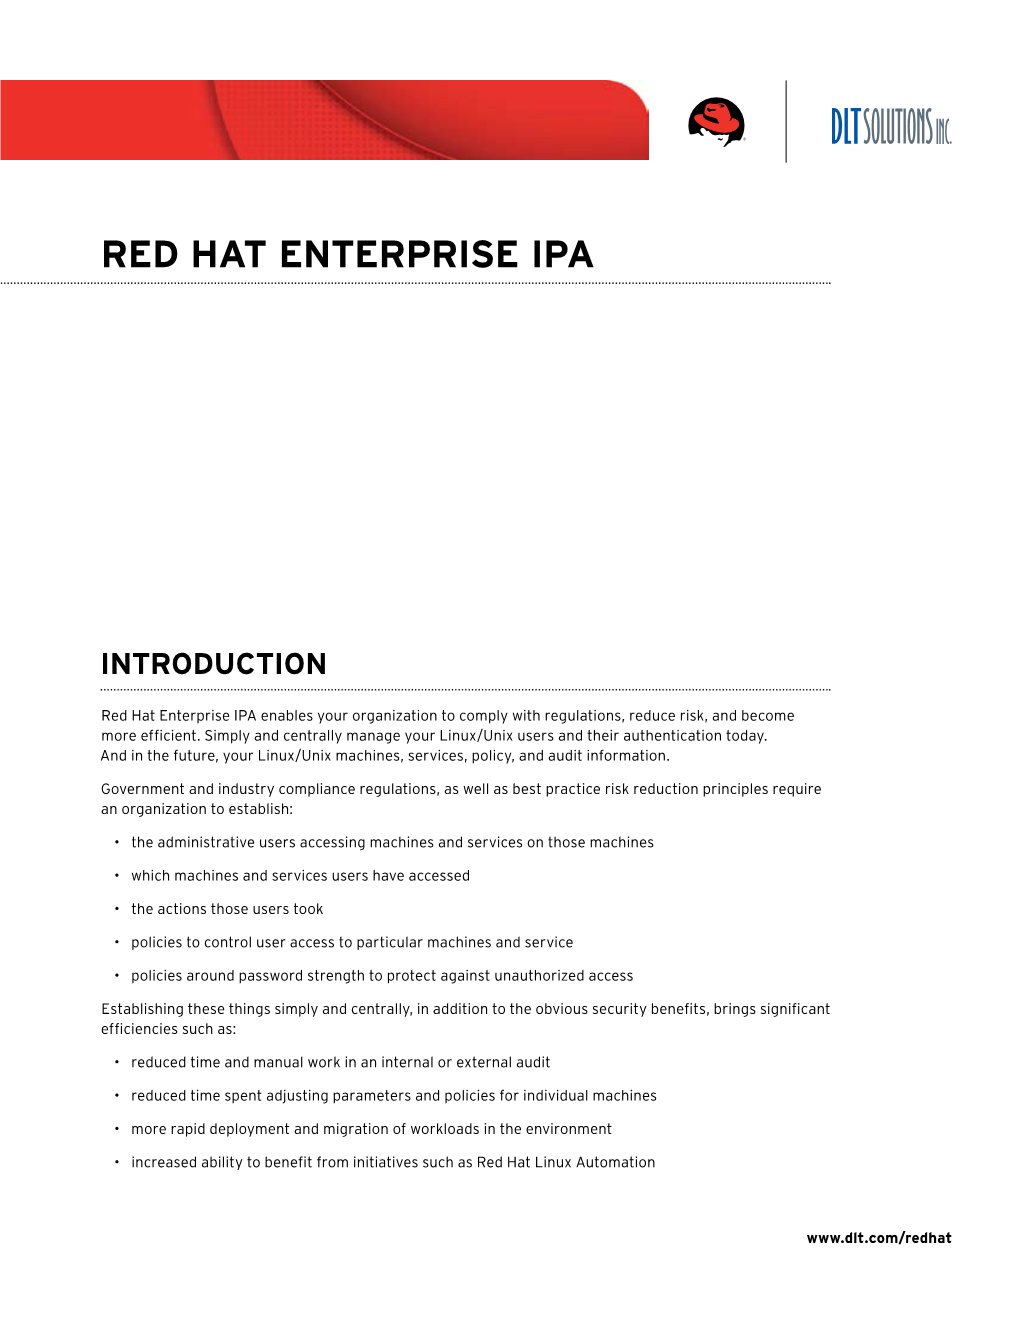 Red Hat Enterprise Ipa